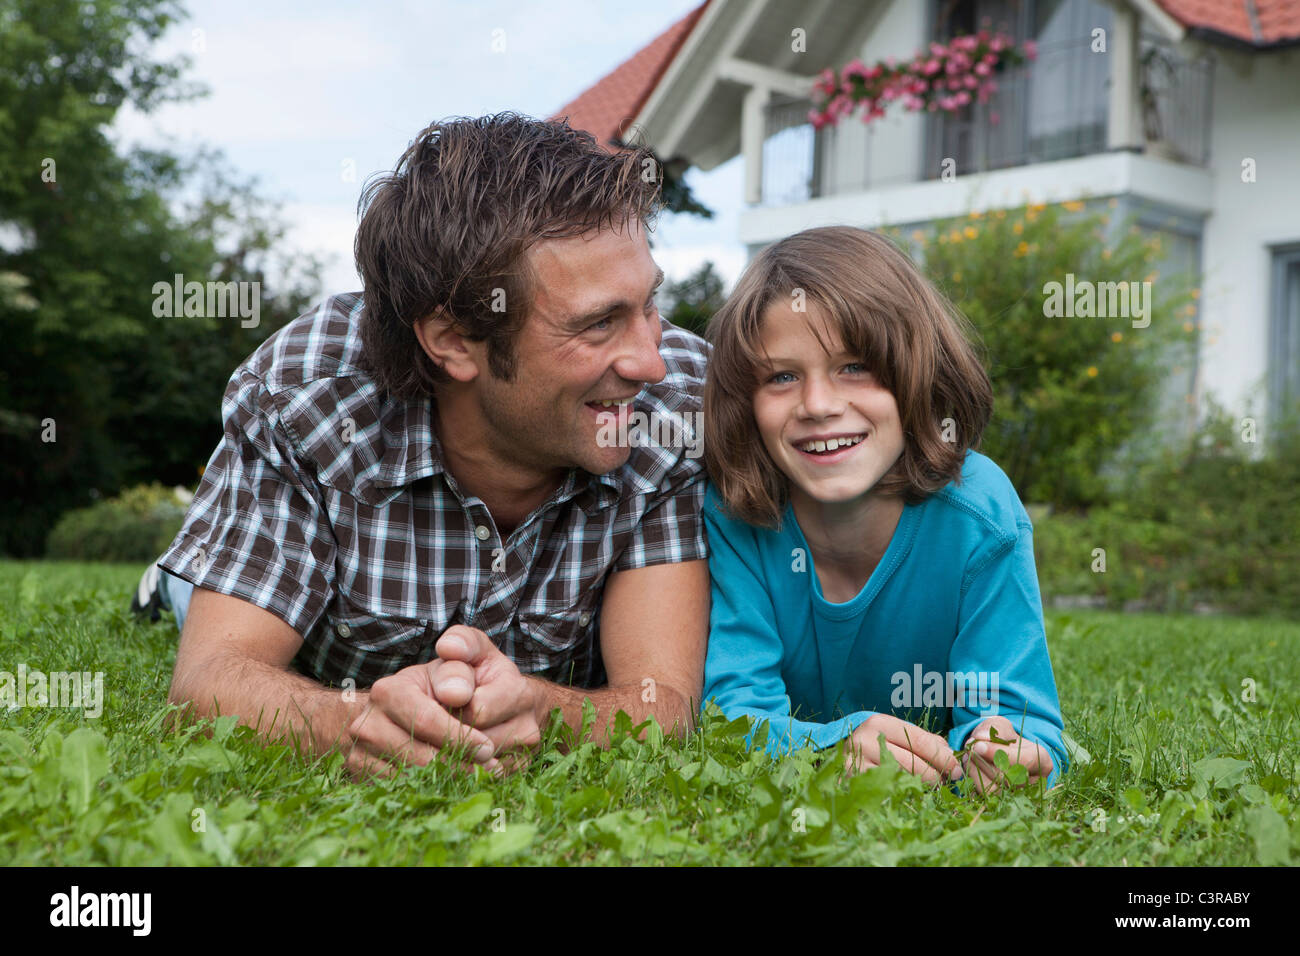 Allemagne, Munich, père et fils (10-11 ans) dans la région de jardin, smiling Banque D'Images